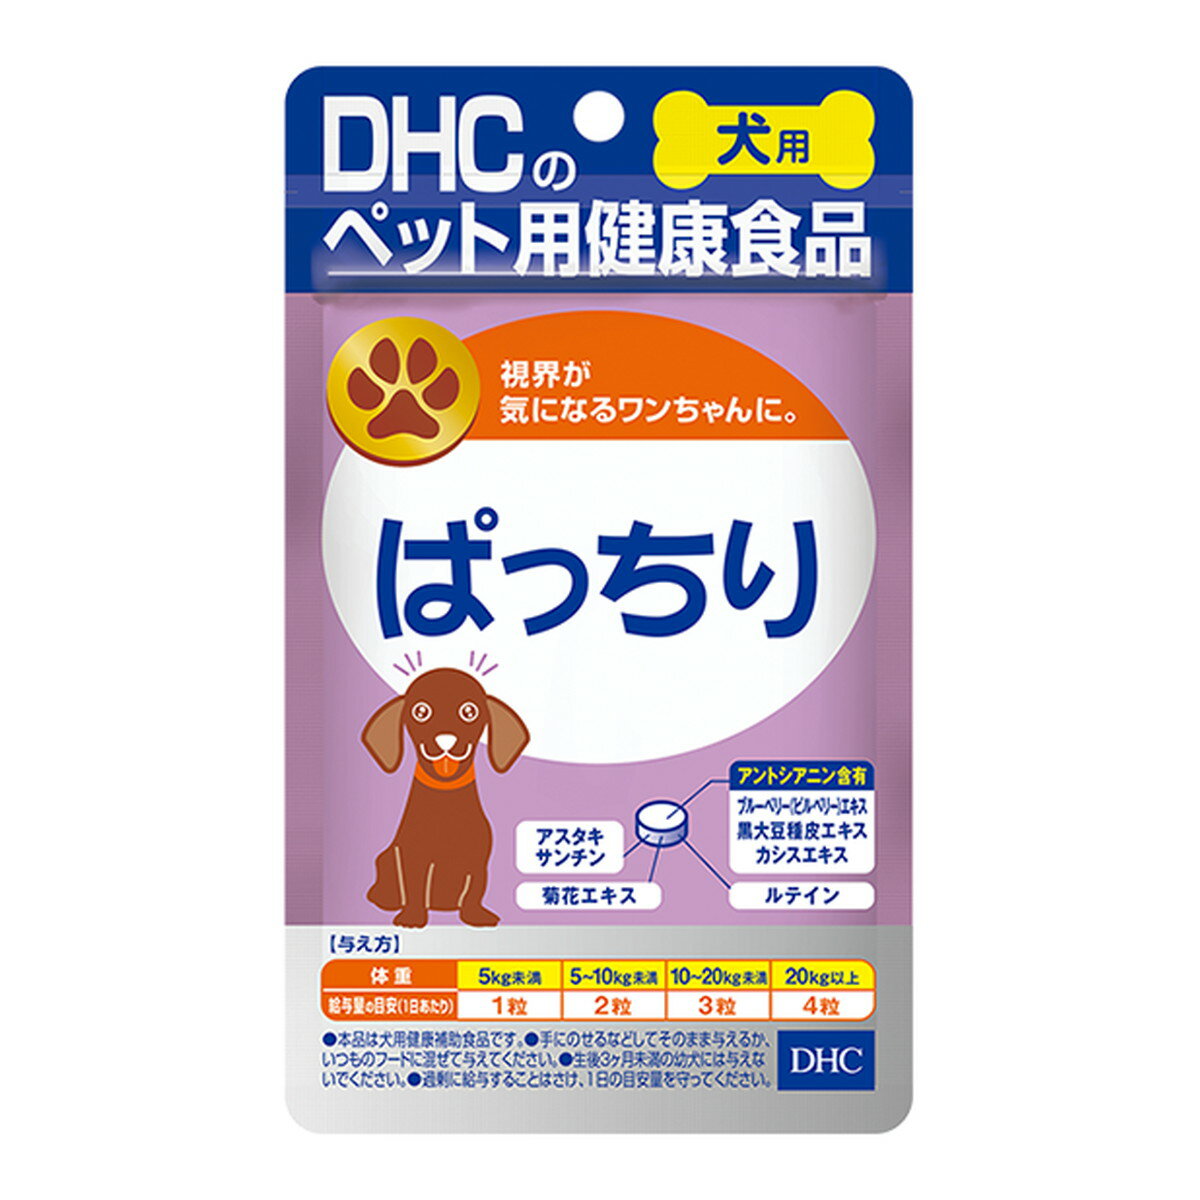 DHC ぱっちり 愛犬用 15g